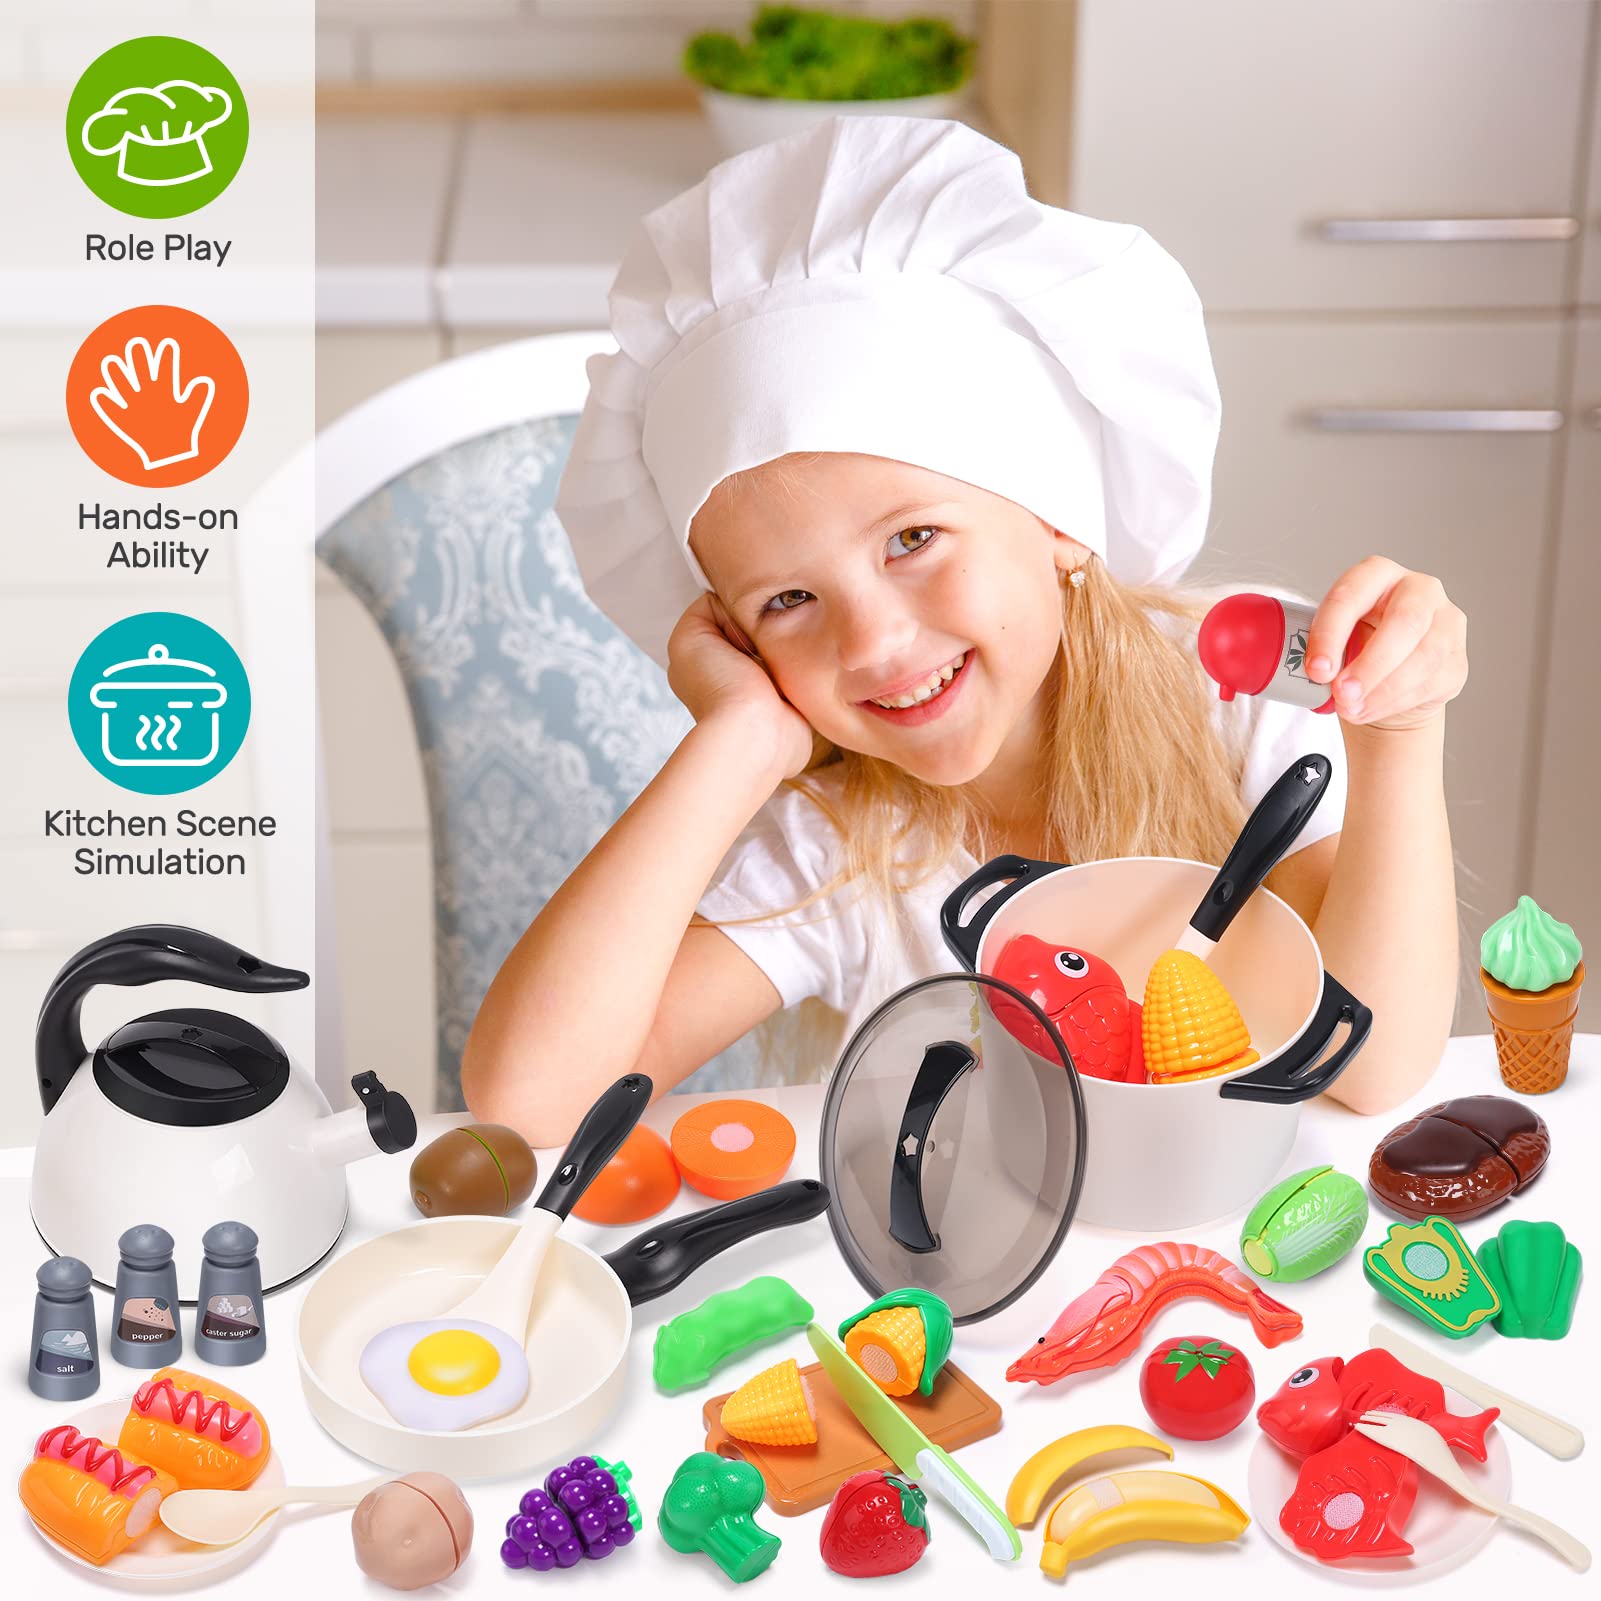 Kitchen Playsets, Play Kitchen accessories